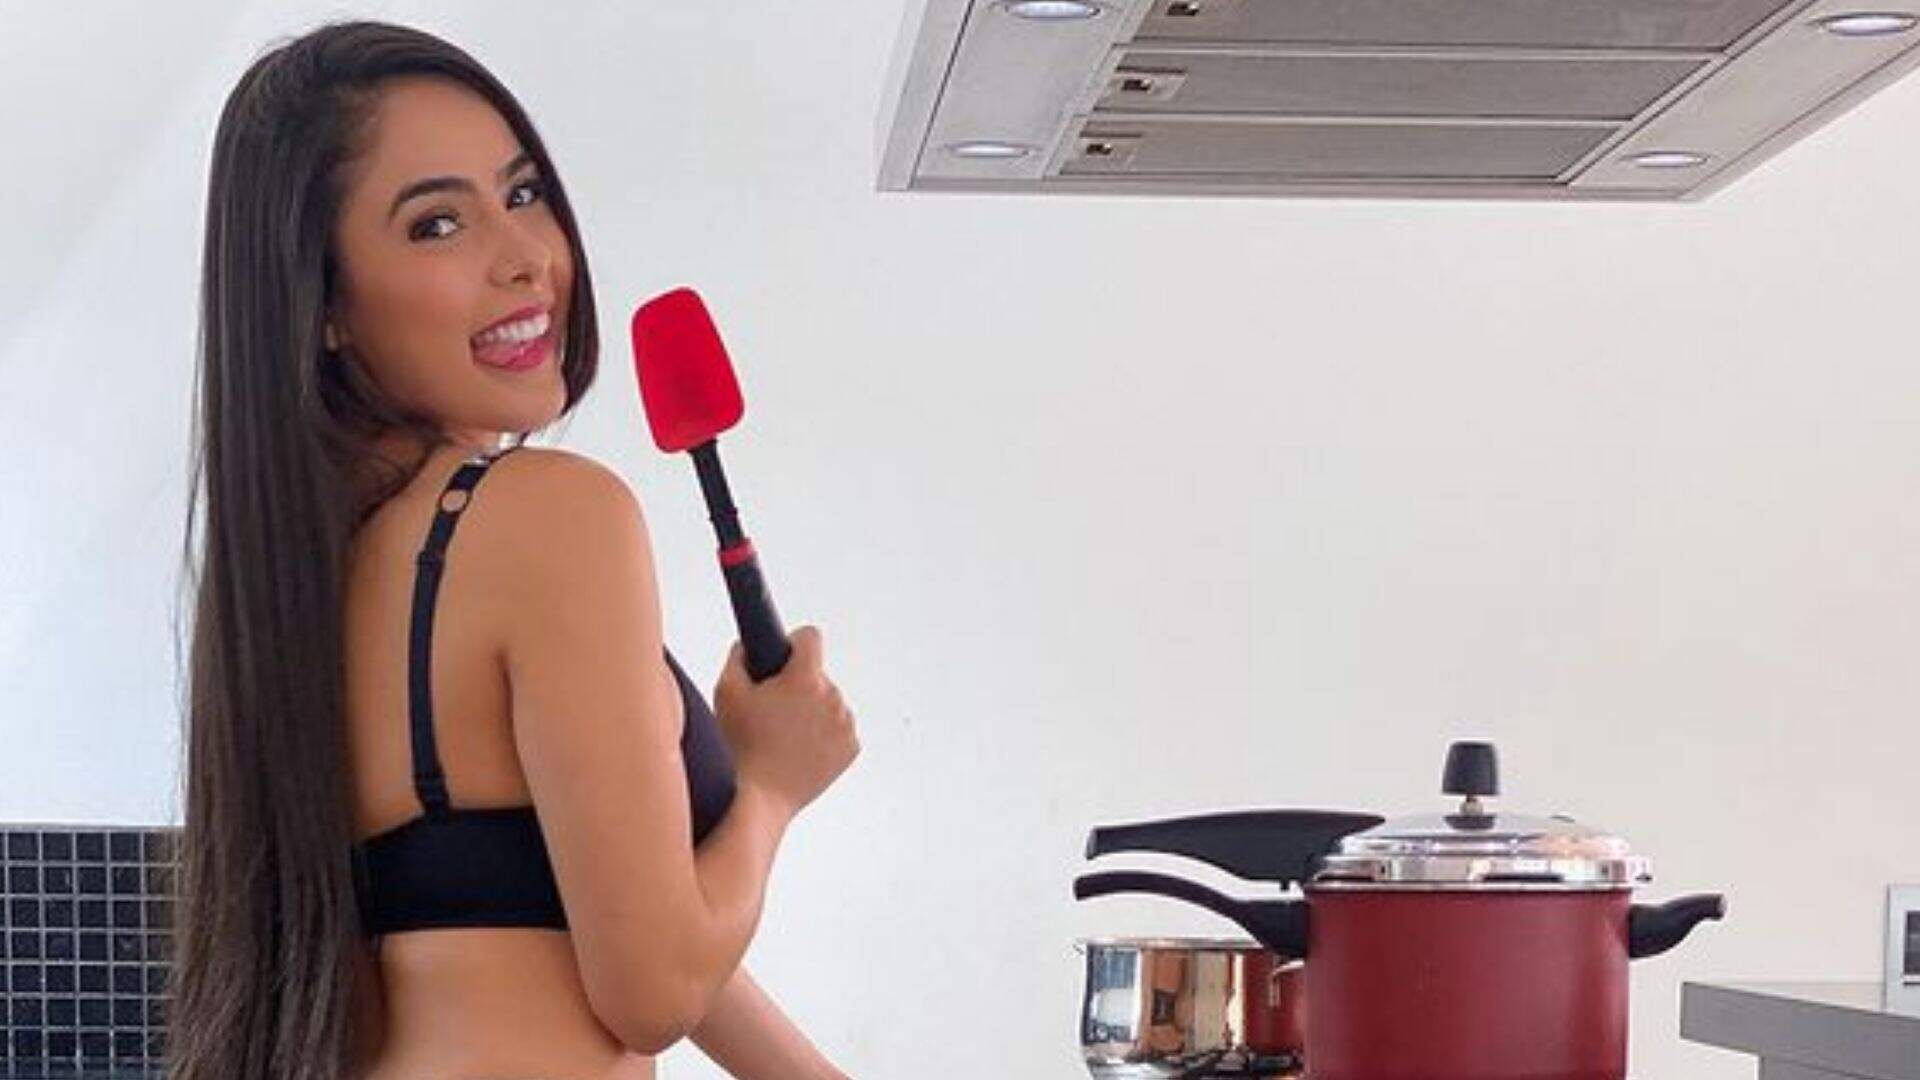 Juliana Caetano é clicada na cozinha e fãs notam detalhe: “Não fica com frio assim?” - Metropolitana FM